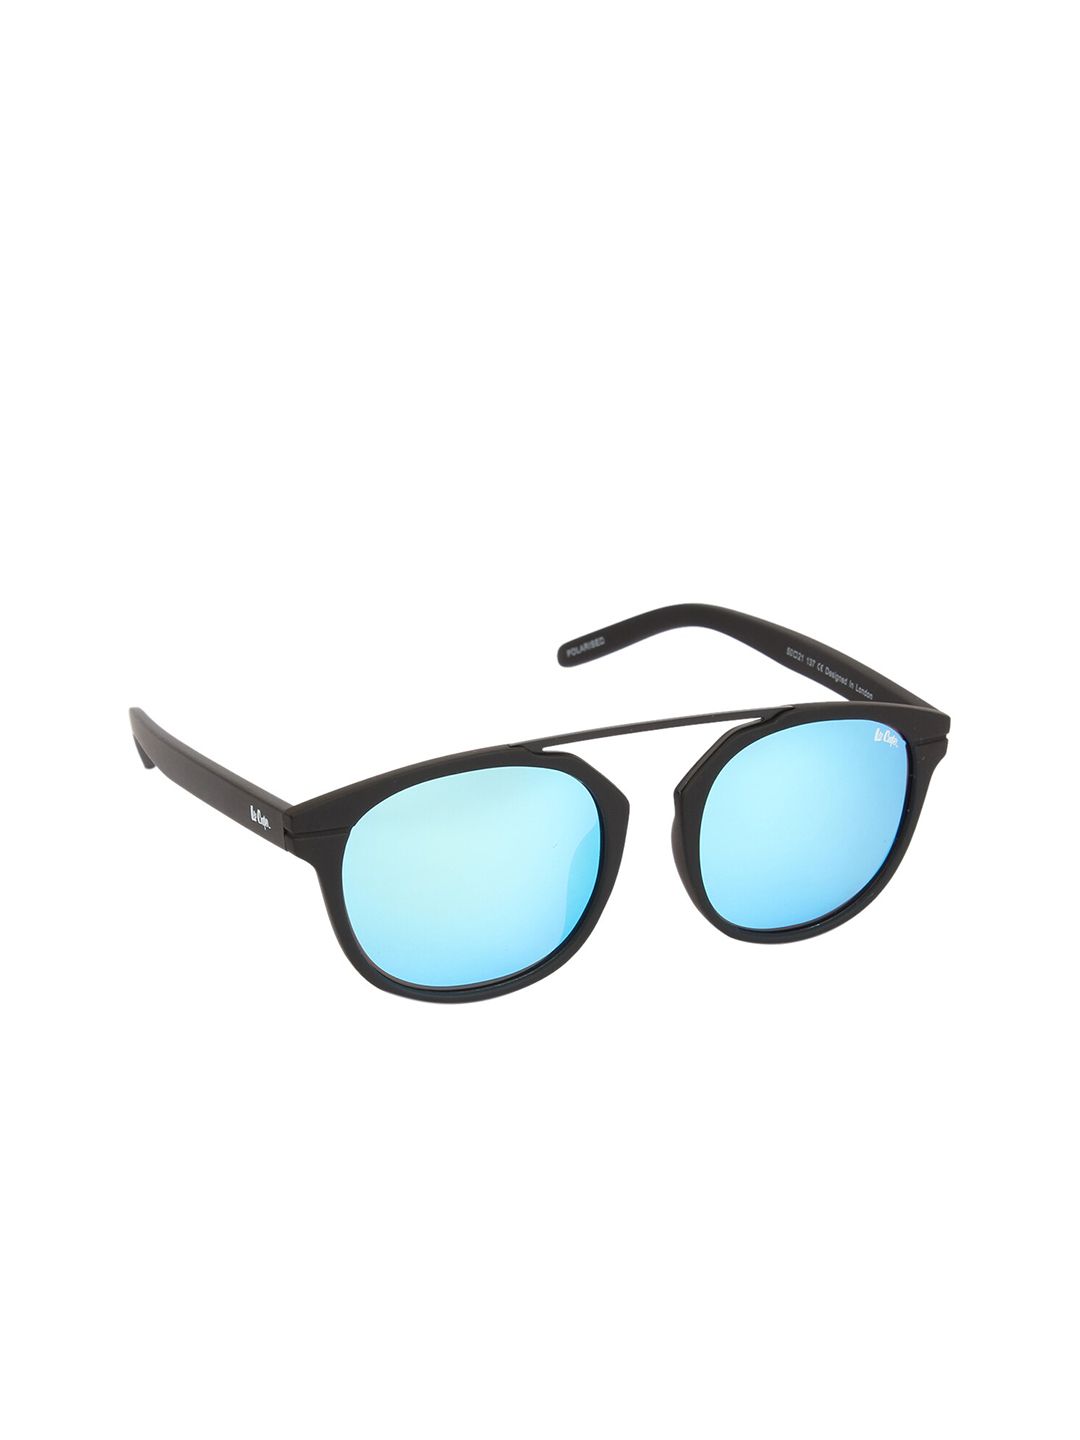 Lee Cooper Unisex Blue Lens & Black Round Sunglasses with Polarised Lens Price in India